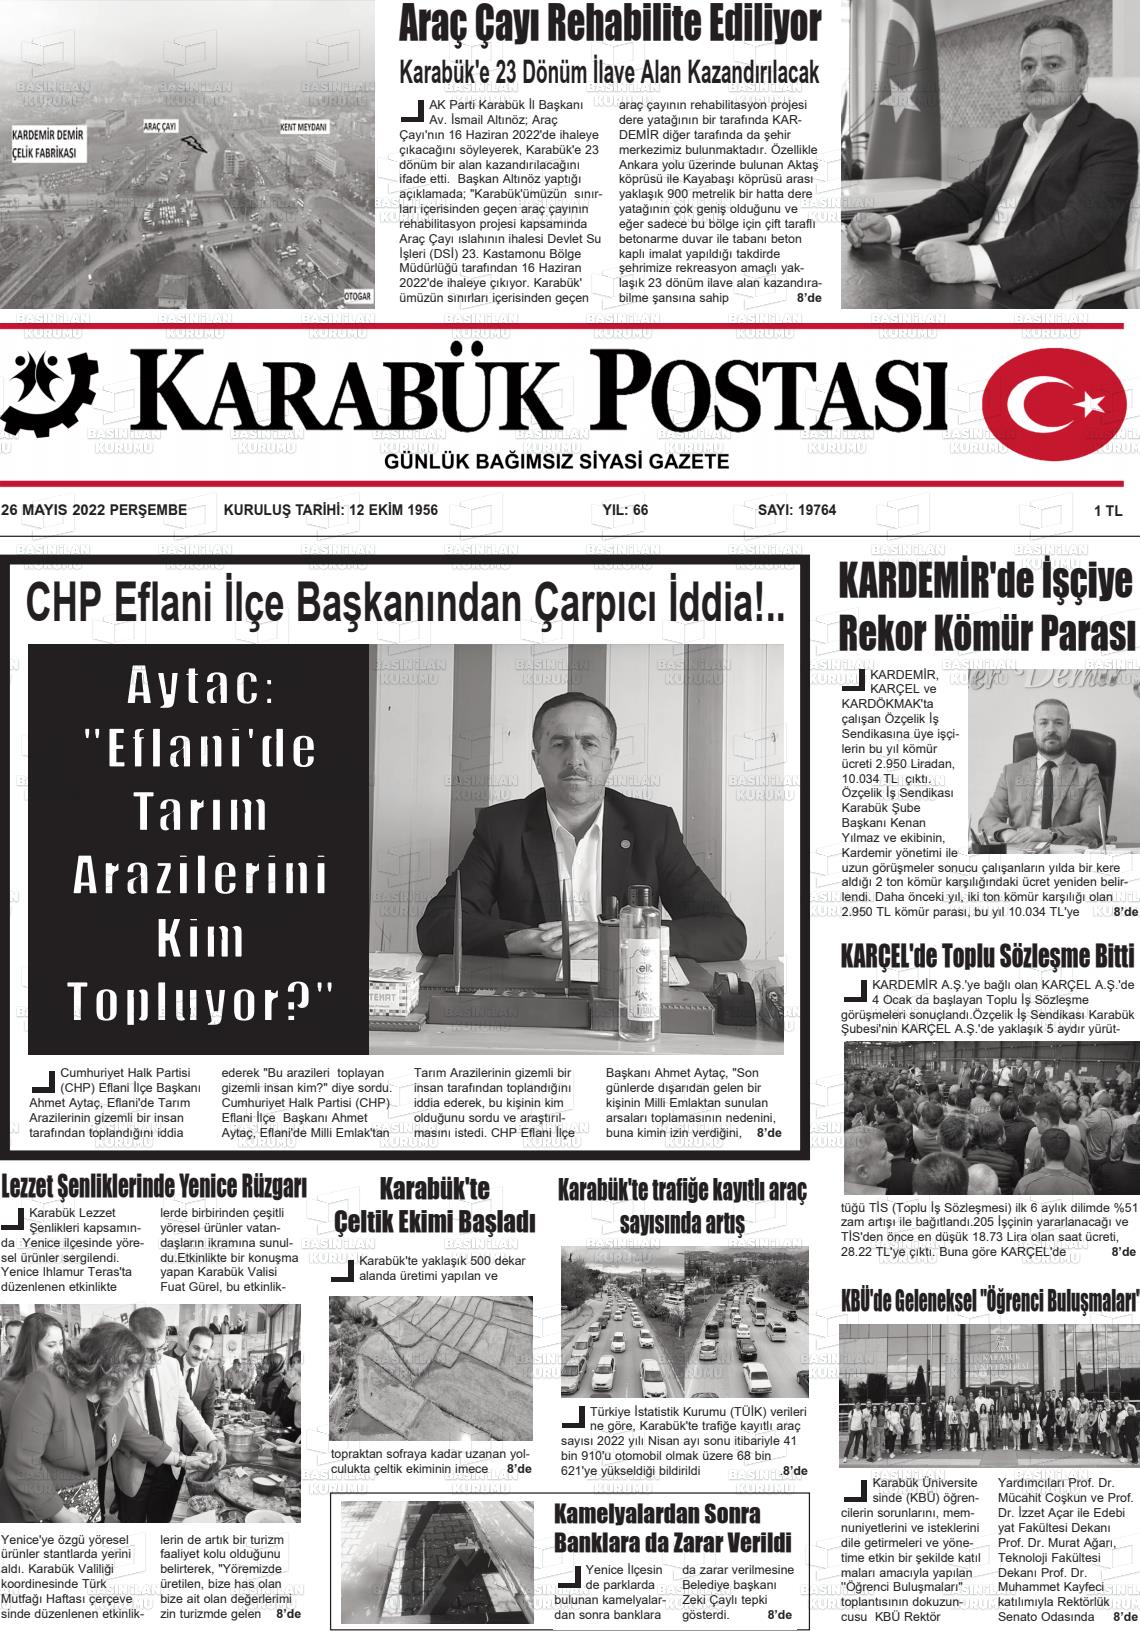 26 Mayıs 2022 Karabük Postası Gazete Manşeti